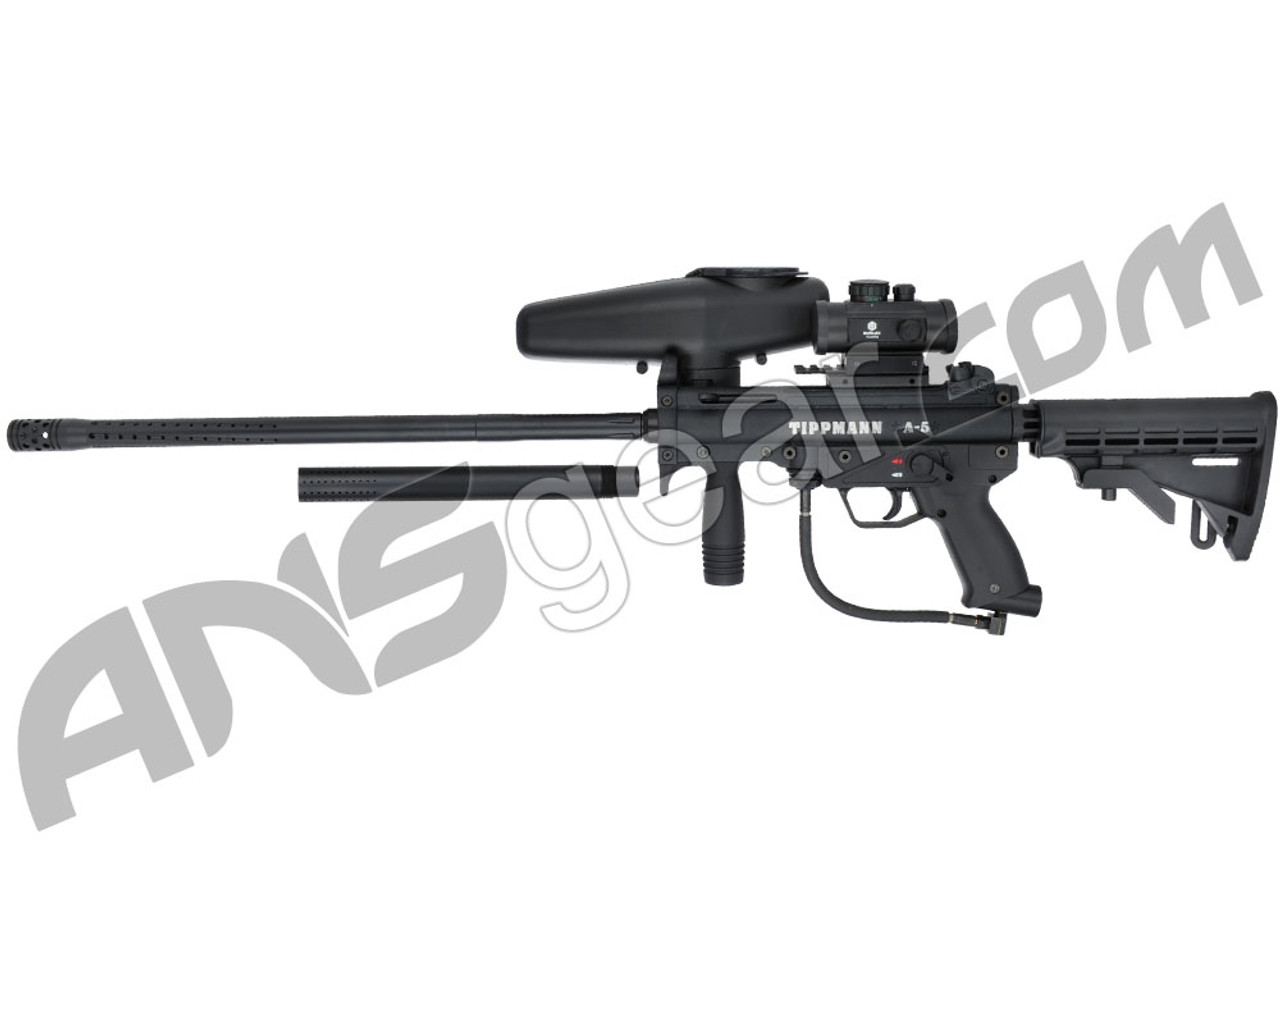 Sniper Paintball Guns - Best Sniper Rifles